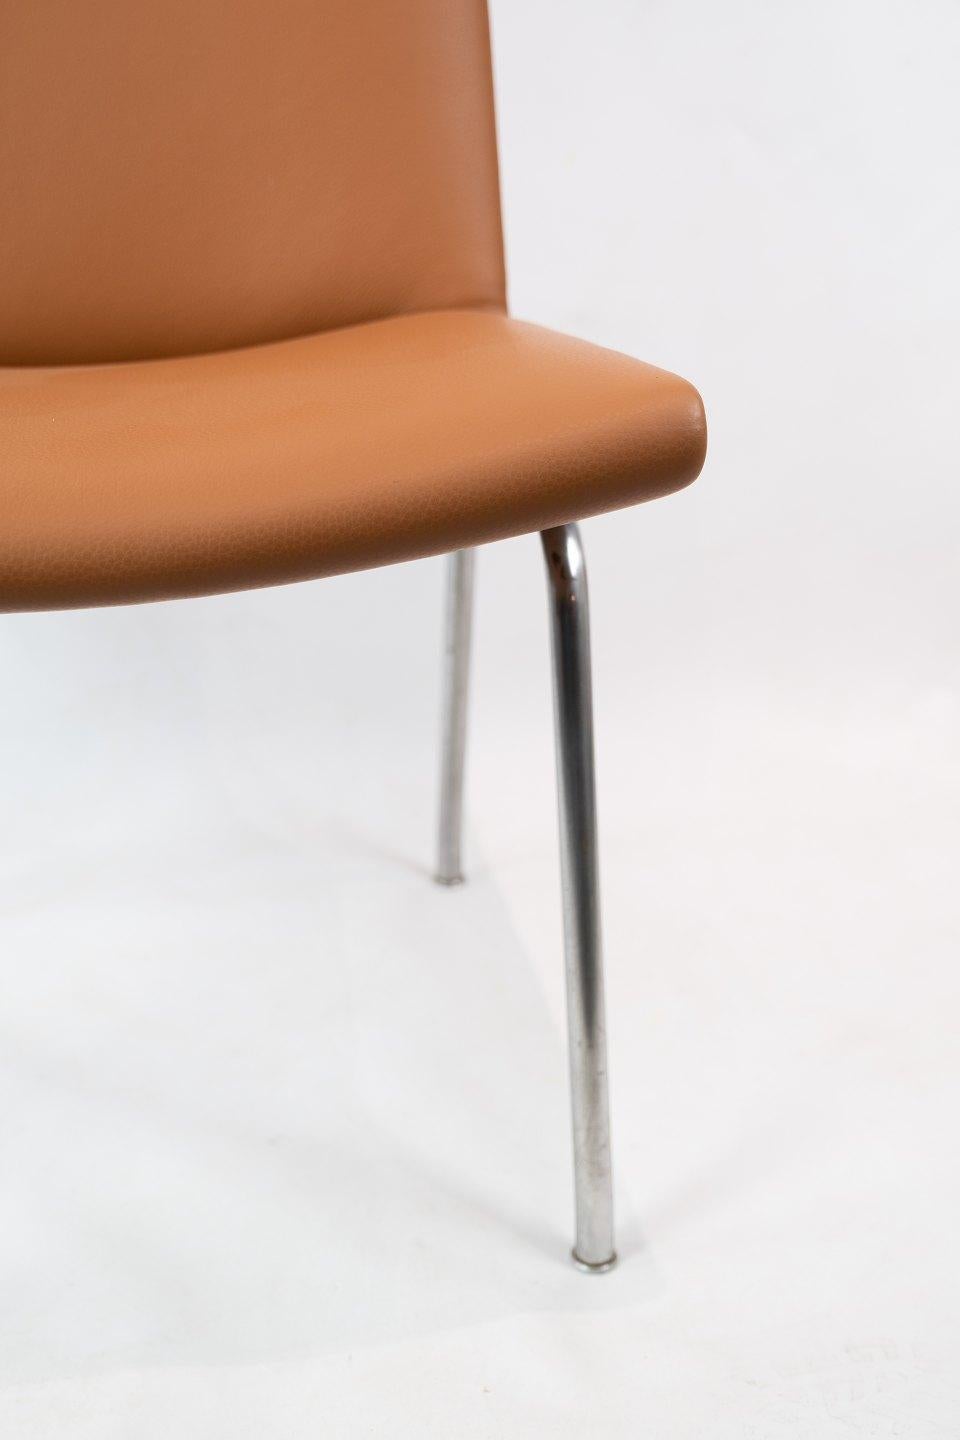 Cuir The Airport-Chair, Model AP37, Design/One par Hans J. Wegner dans les années 1950 en vente